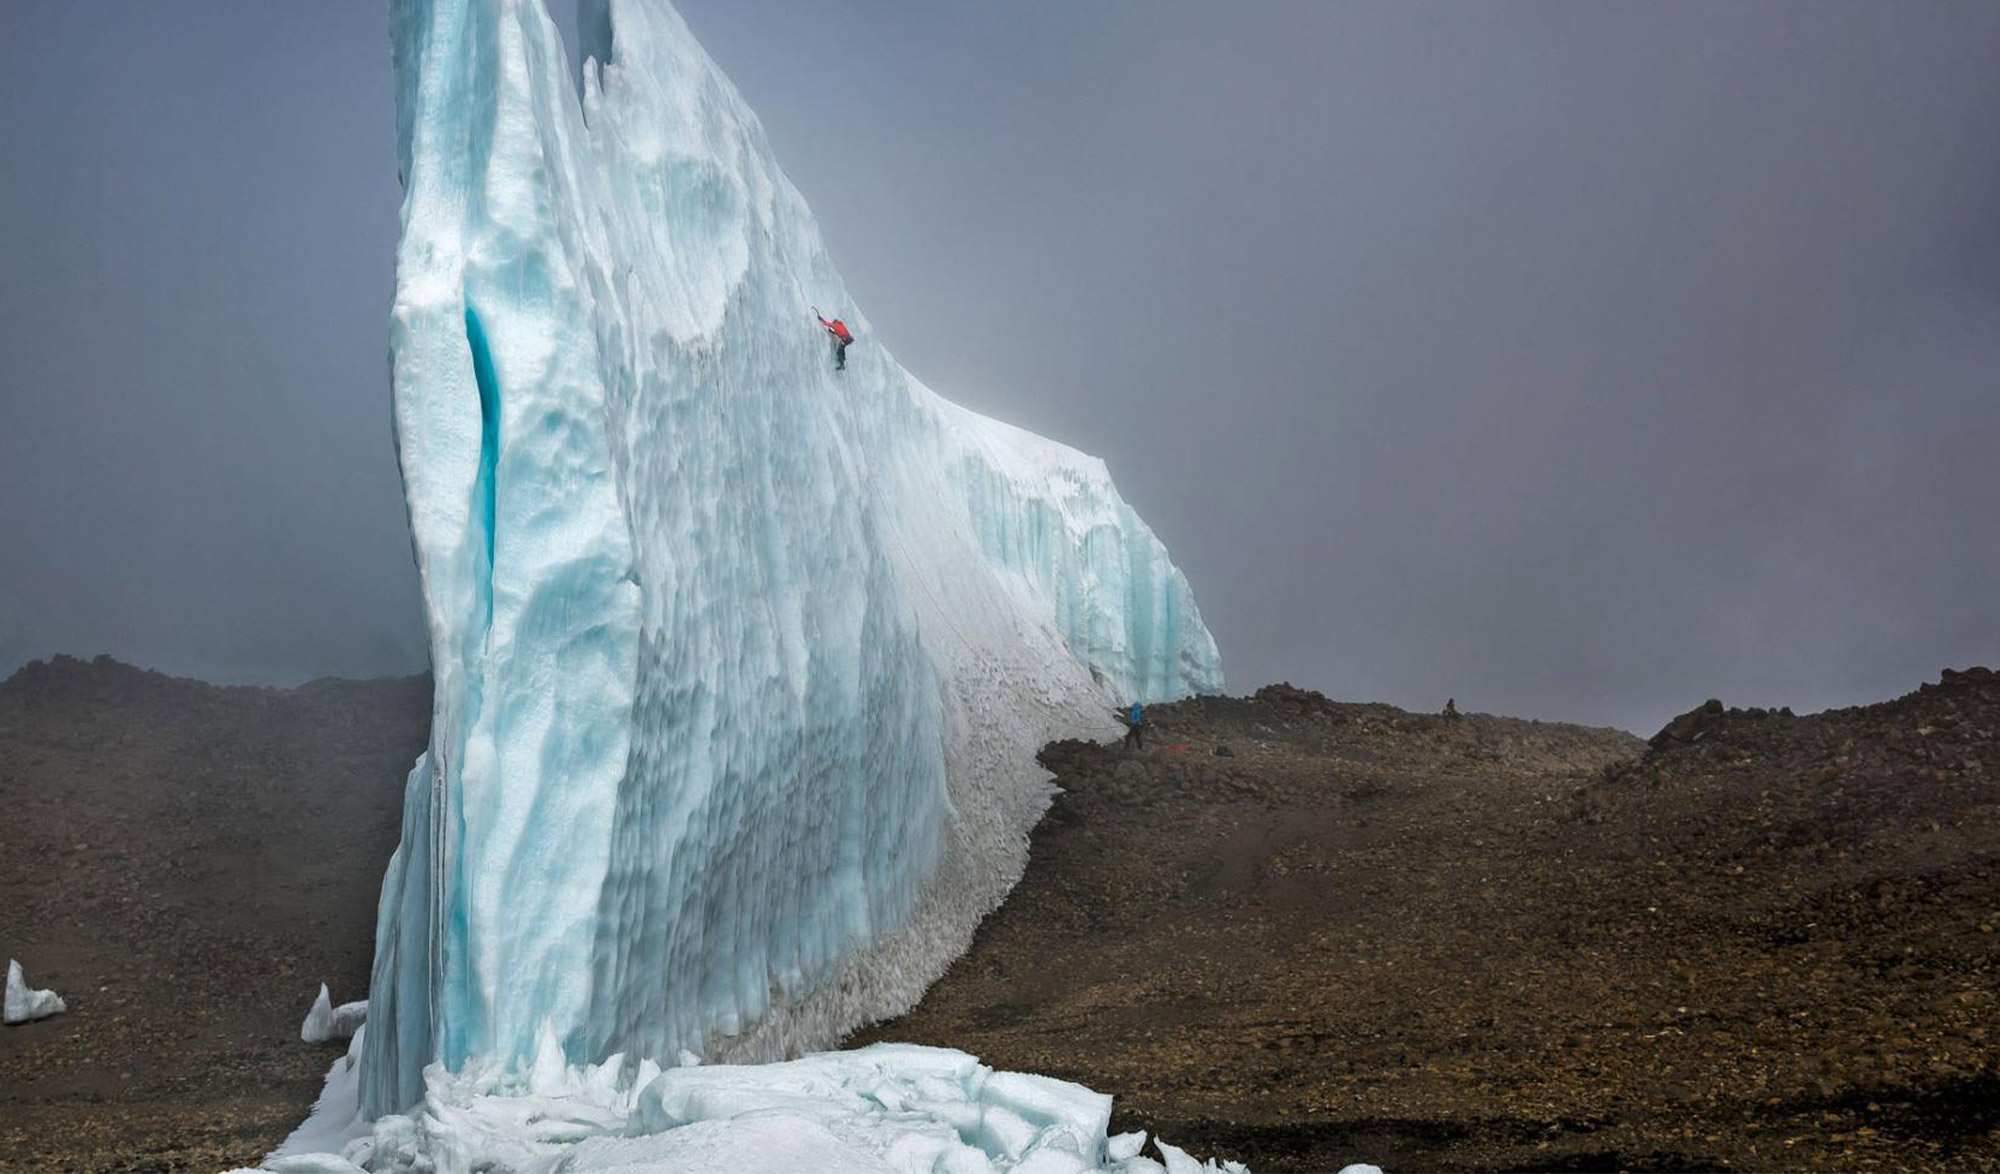 The last ascent, Le retour de Will Gadd au Kilimandjaro